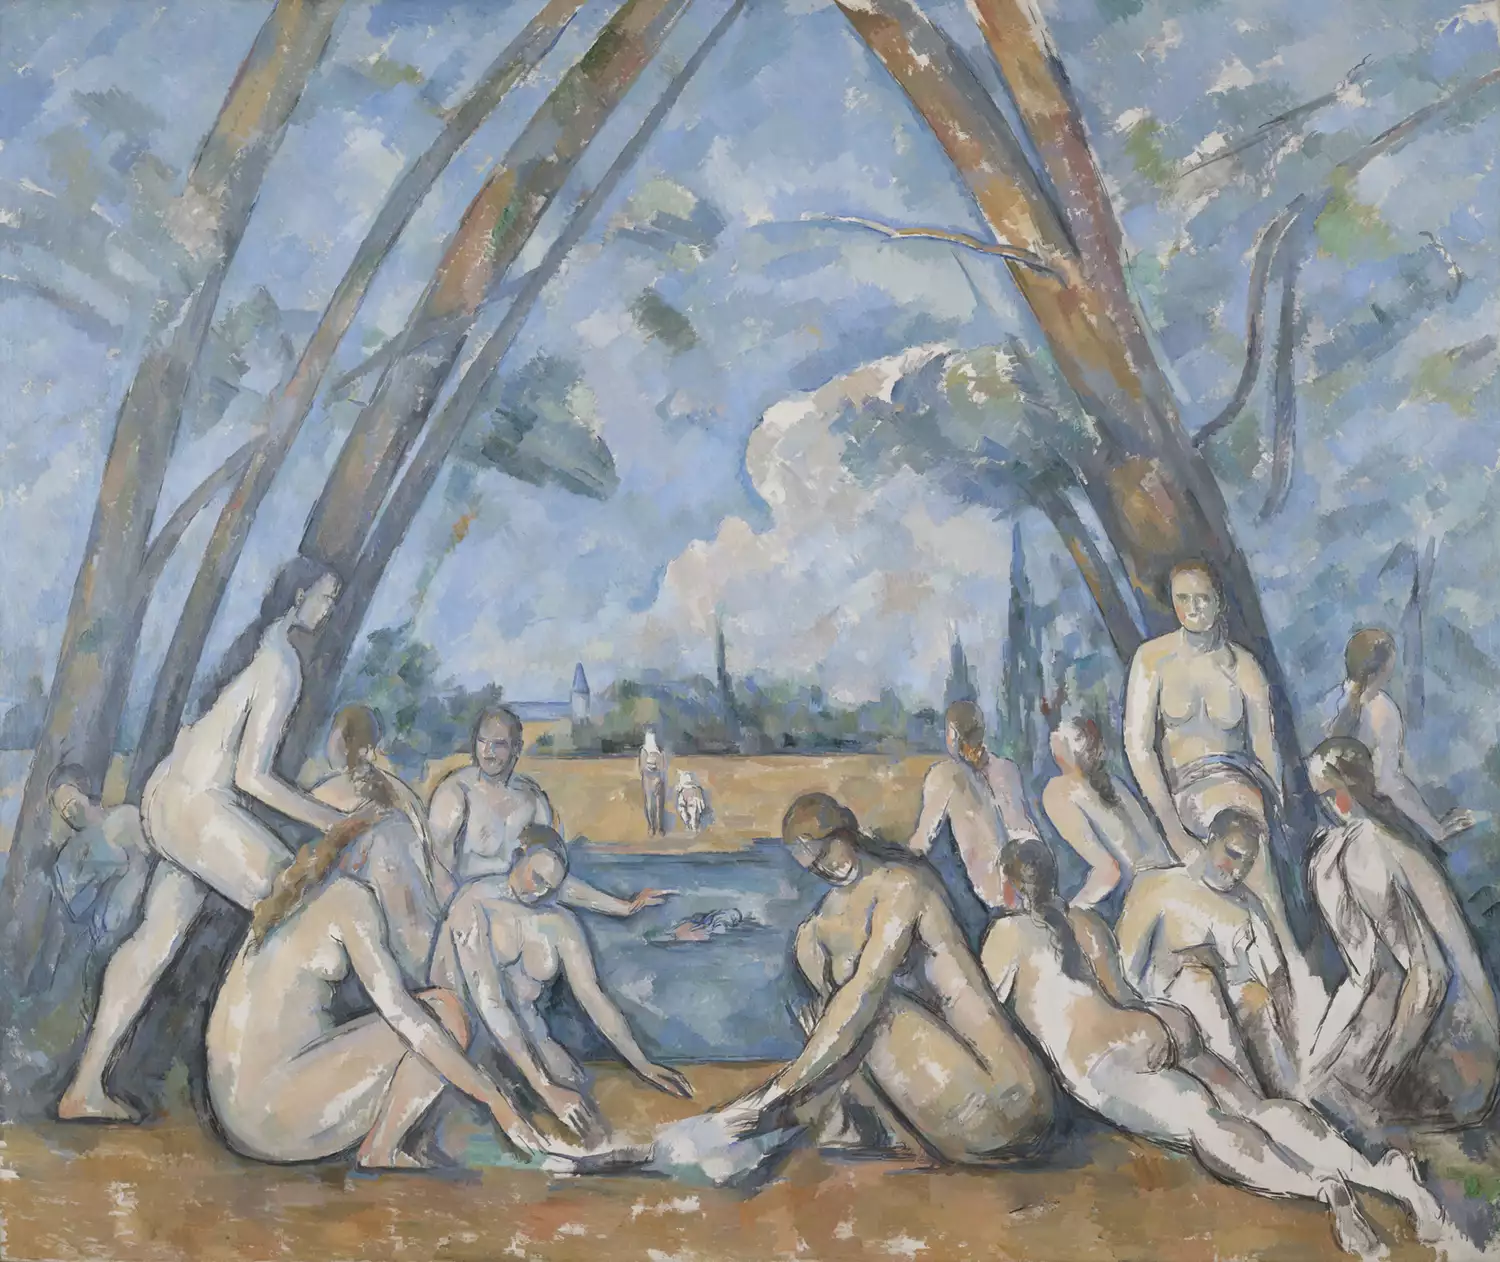 Tiểu sử của Paul Cezanne, người Pháp hậu ấn tượng